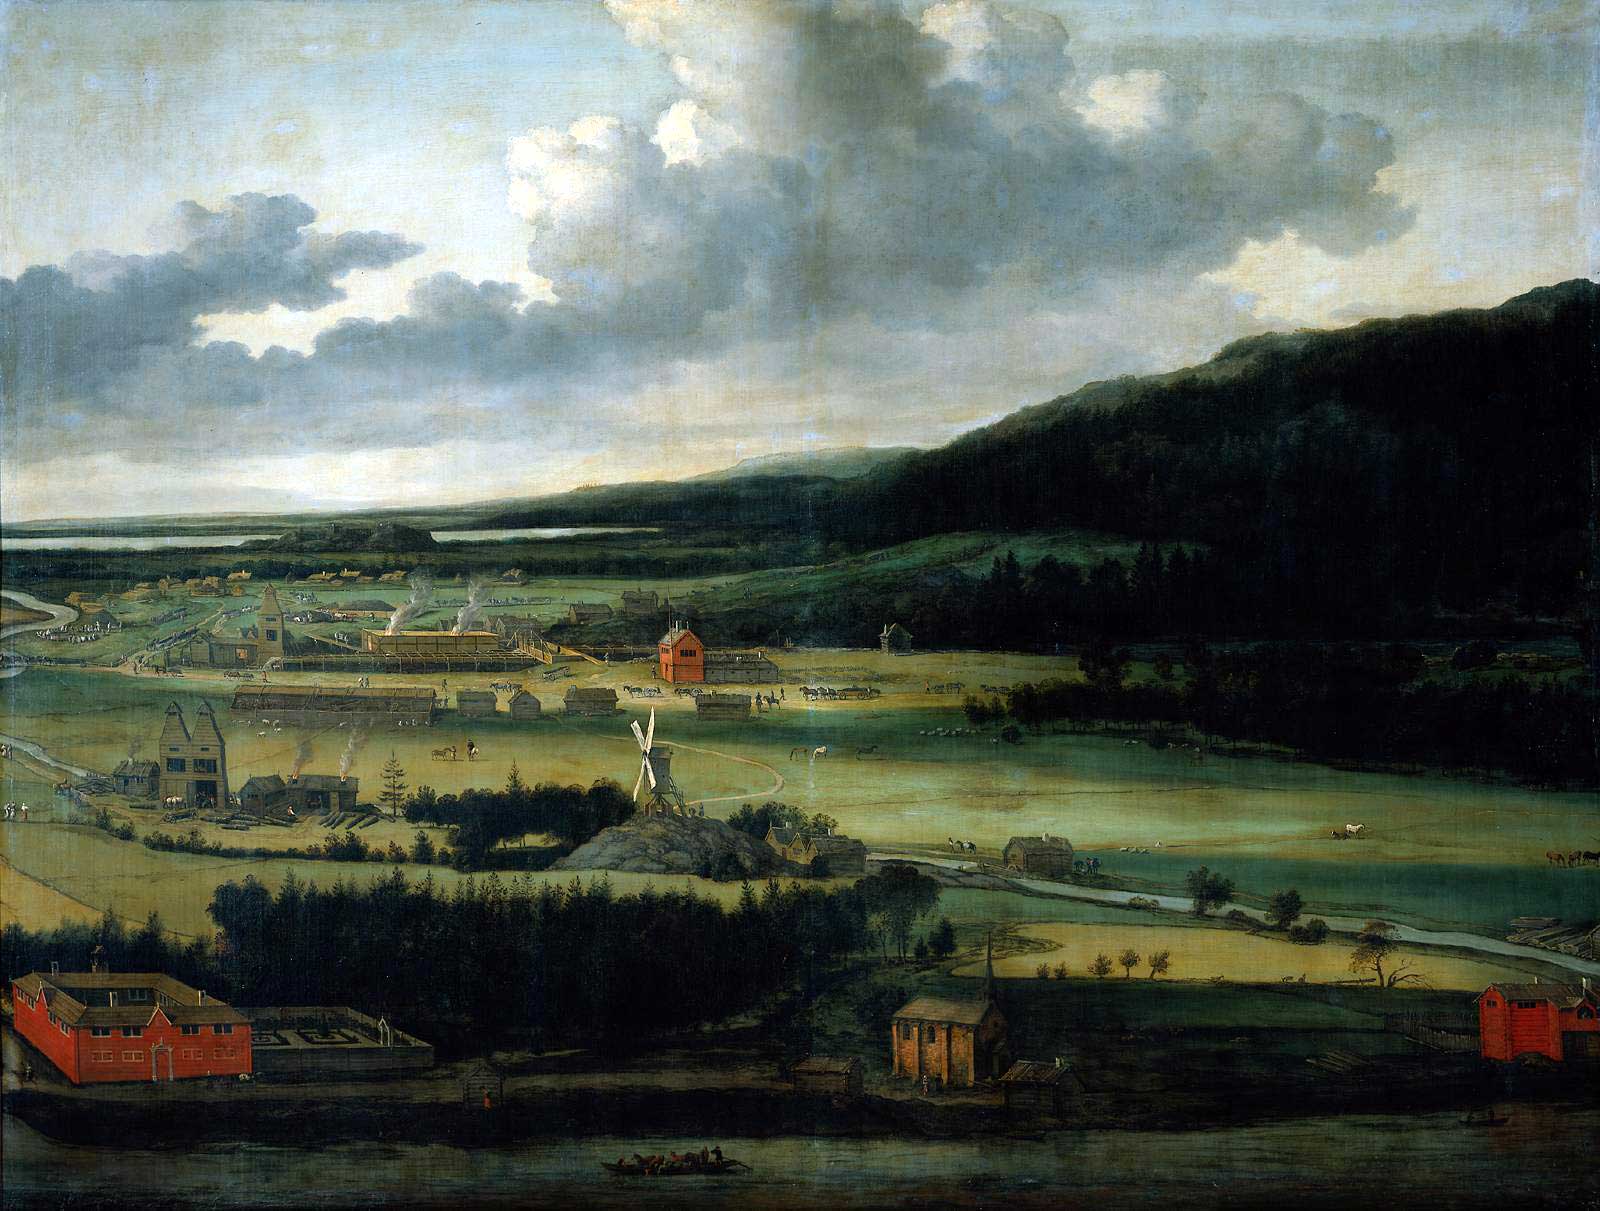 Geschutsgieterij van de familie Trip in Julita Bruk, Zweden, olieverfschilderij van Allart van Everdingen ca. 1650-1675